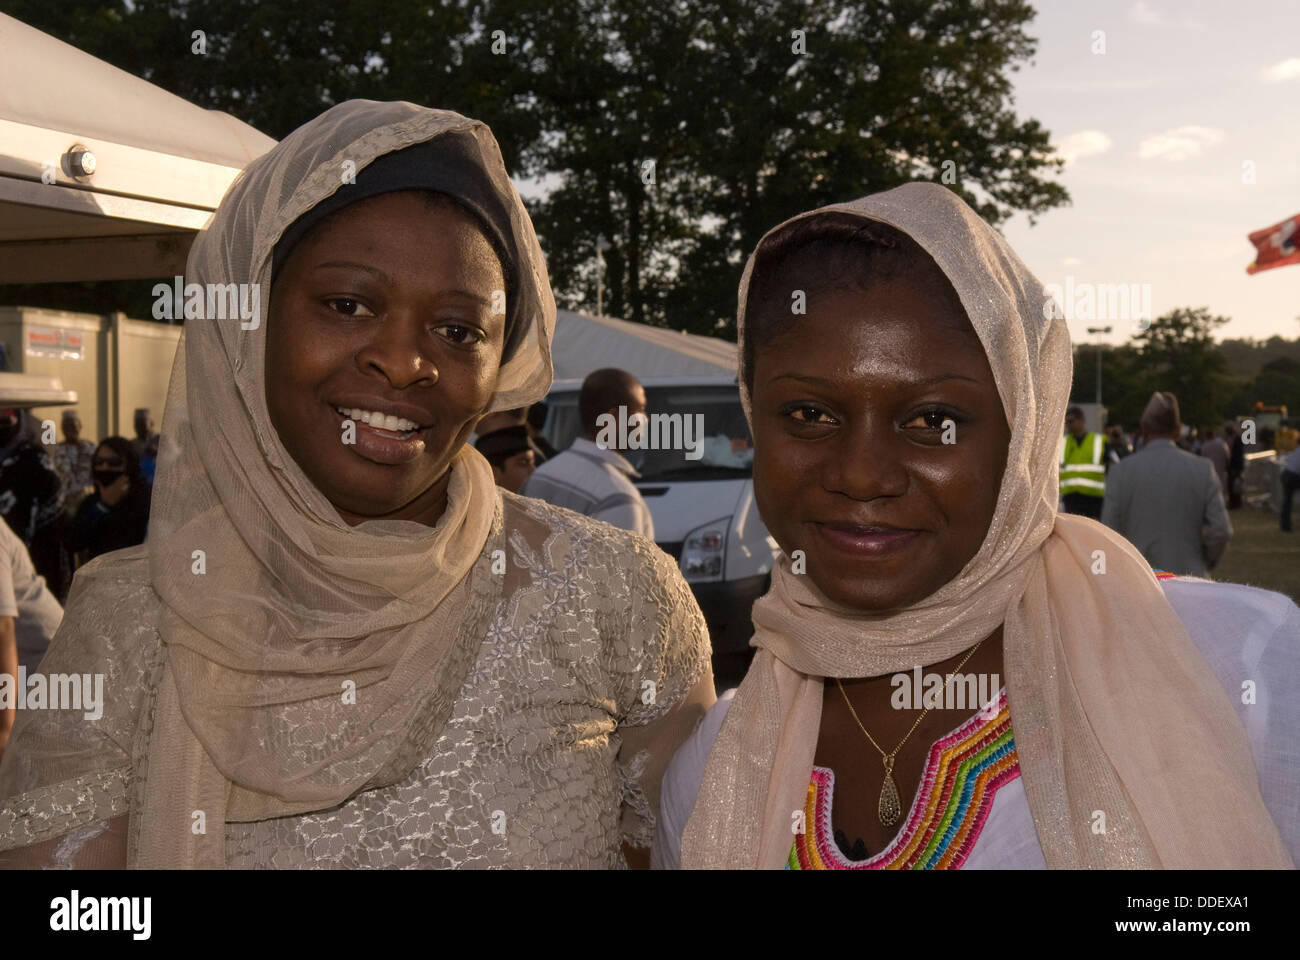 Deux femmes du Ghana participant à la 47e convention musulmane ahmadiyya, jalsa salana, près de Alton, Hampshire, Royaume-Uni. Banque D'Images